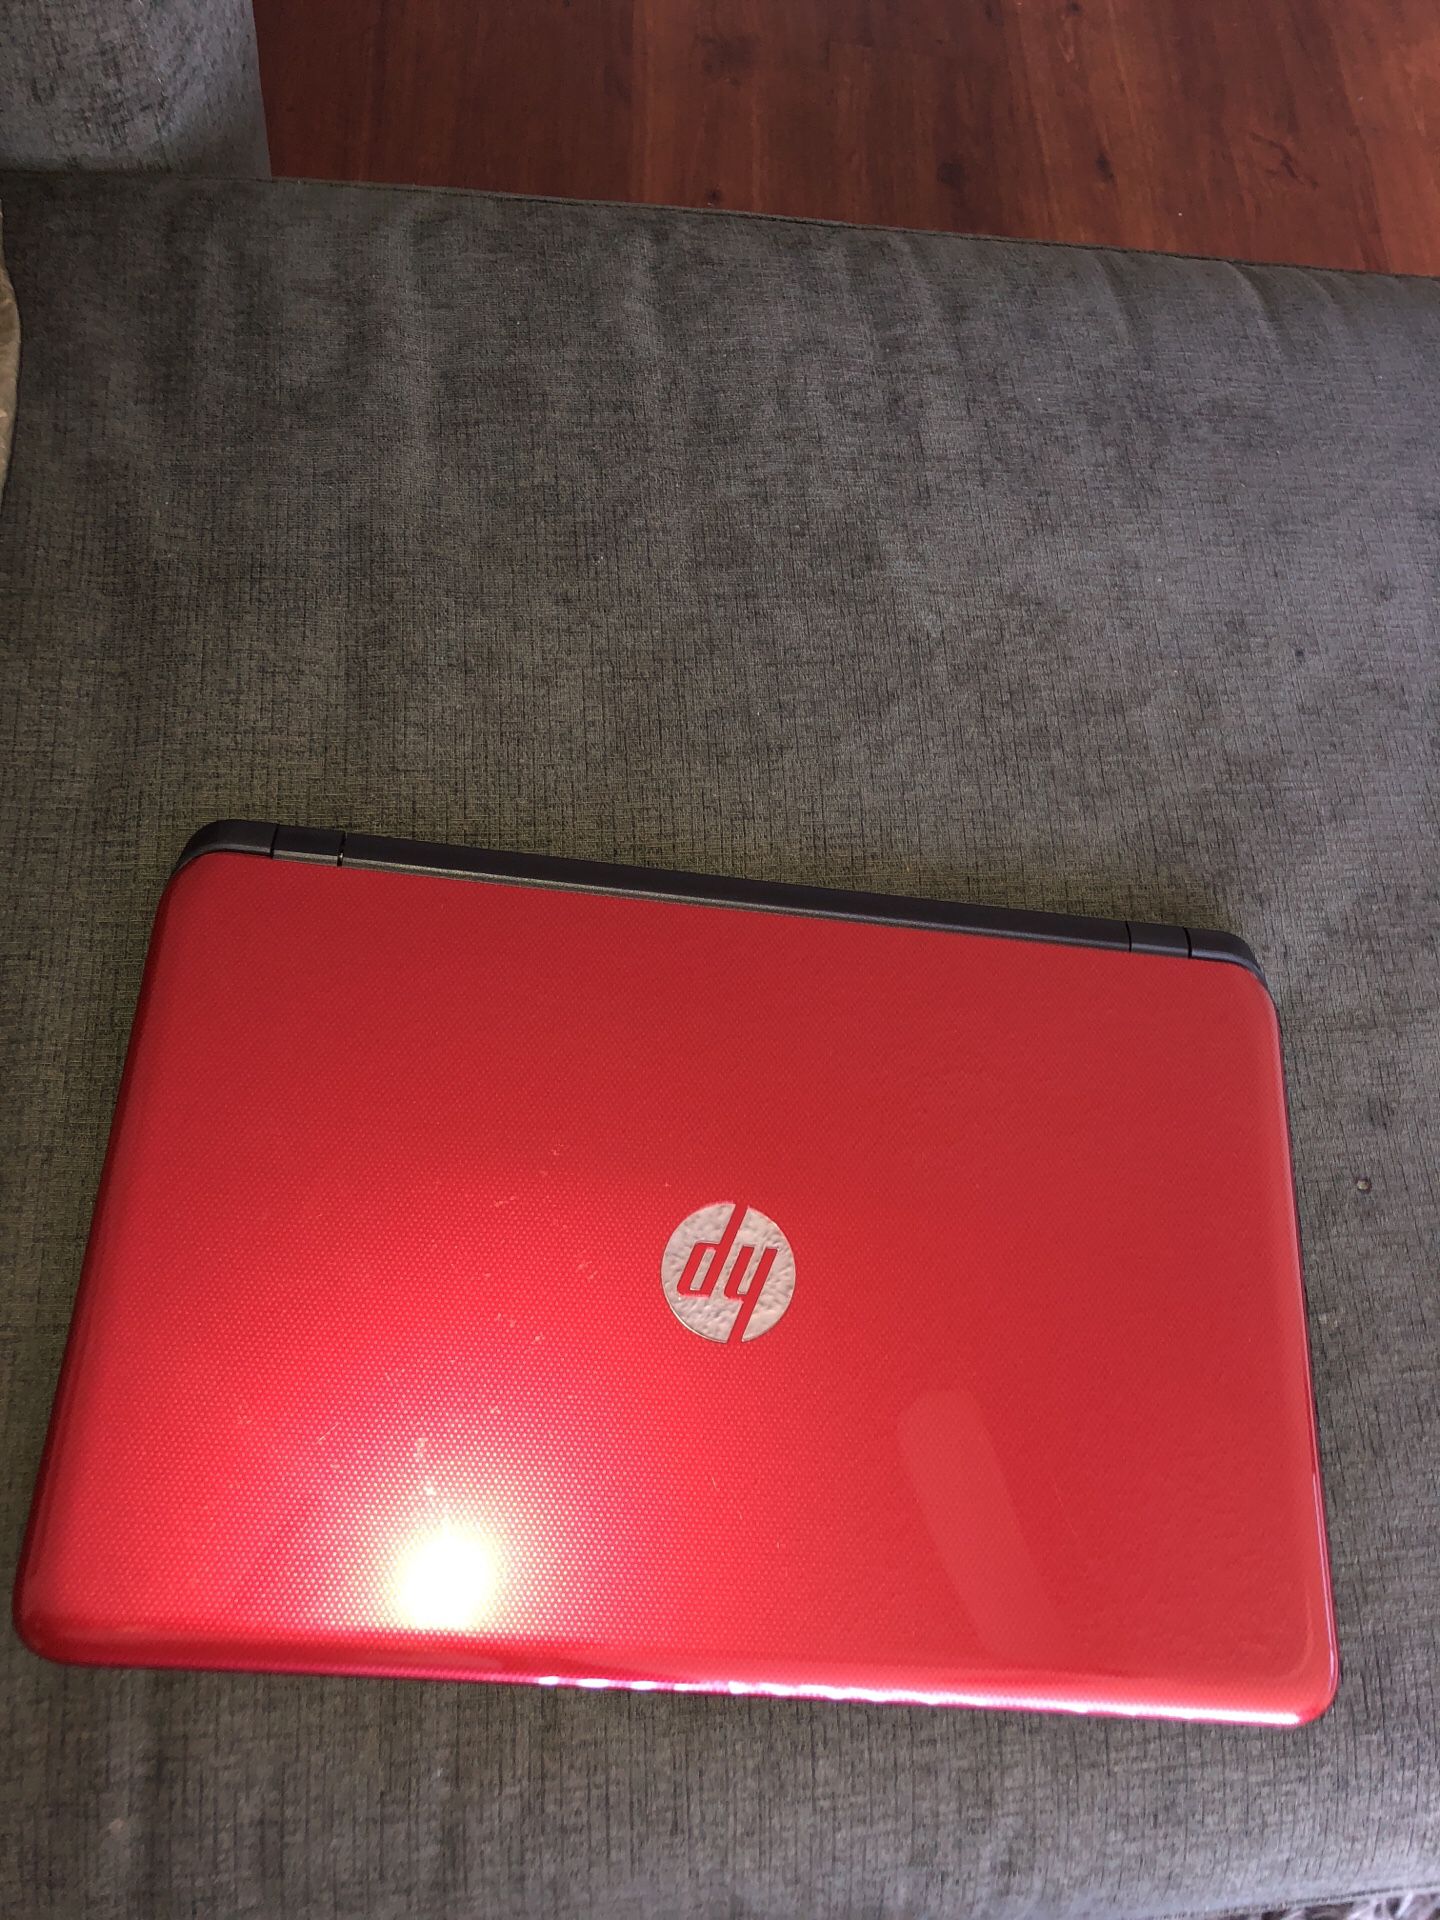 Red laptop